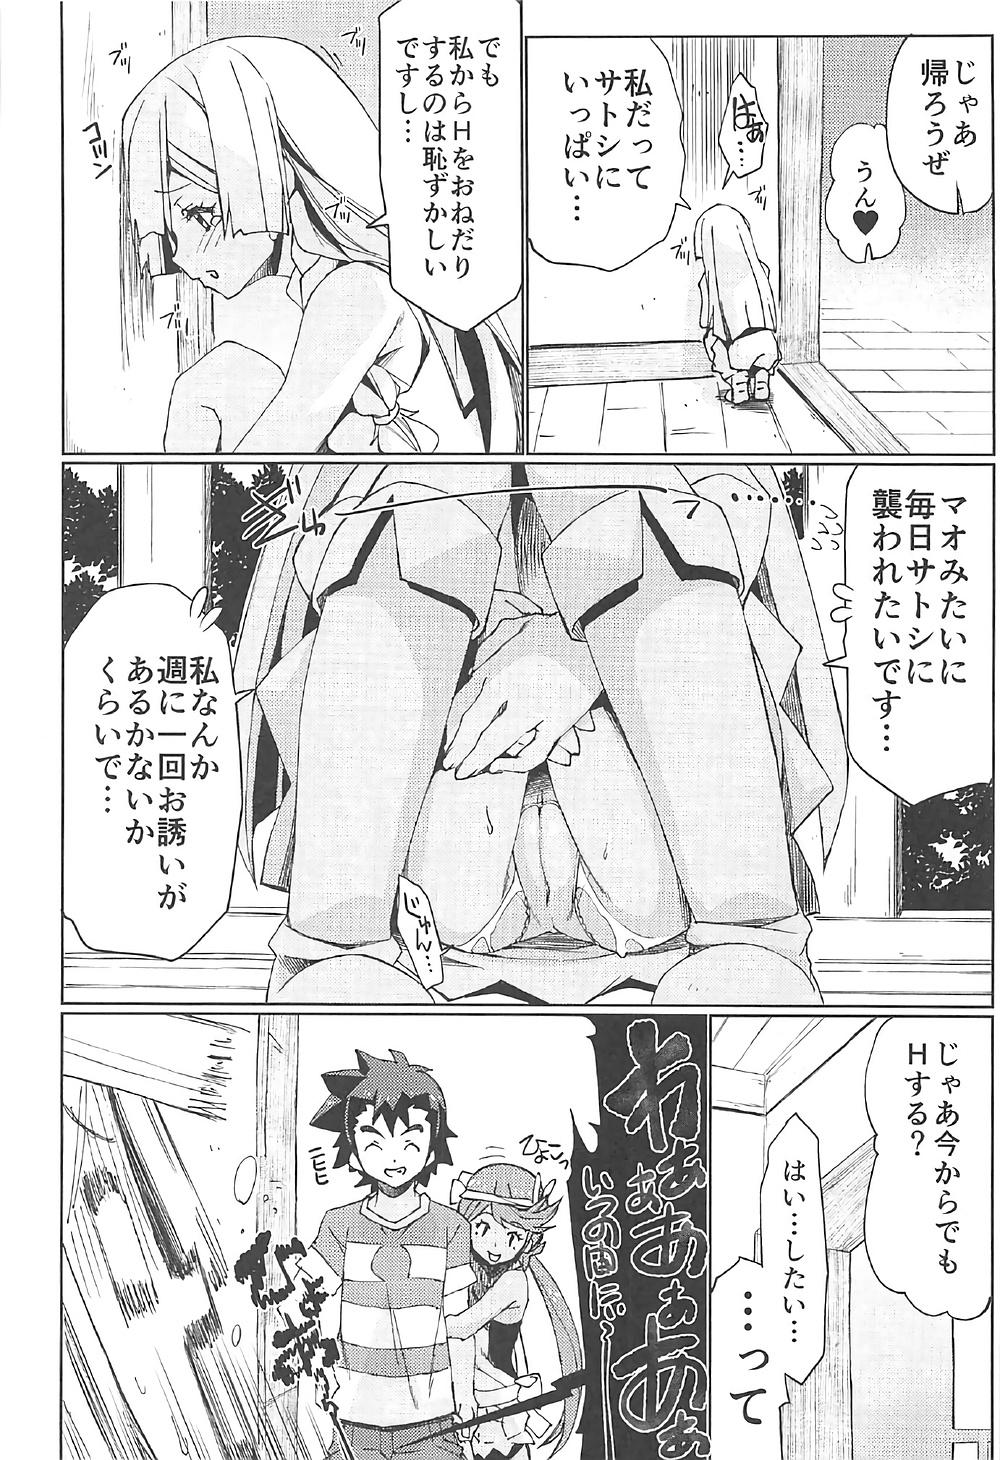 Money Watashi ga sono Ki ni nareba Ronriteki ni! 2!! - Pokemon Car - Page 9